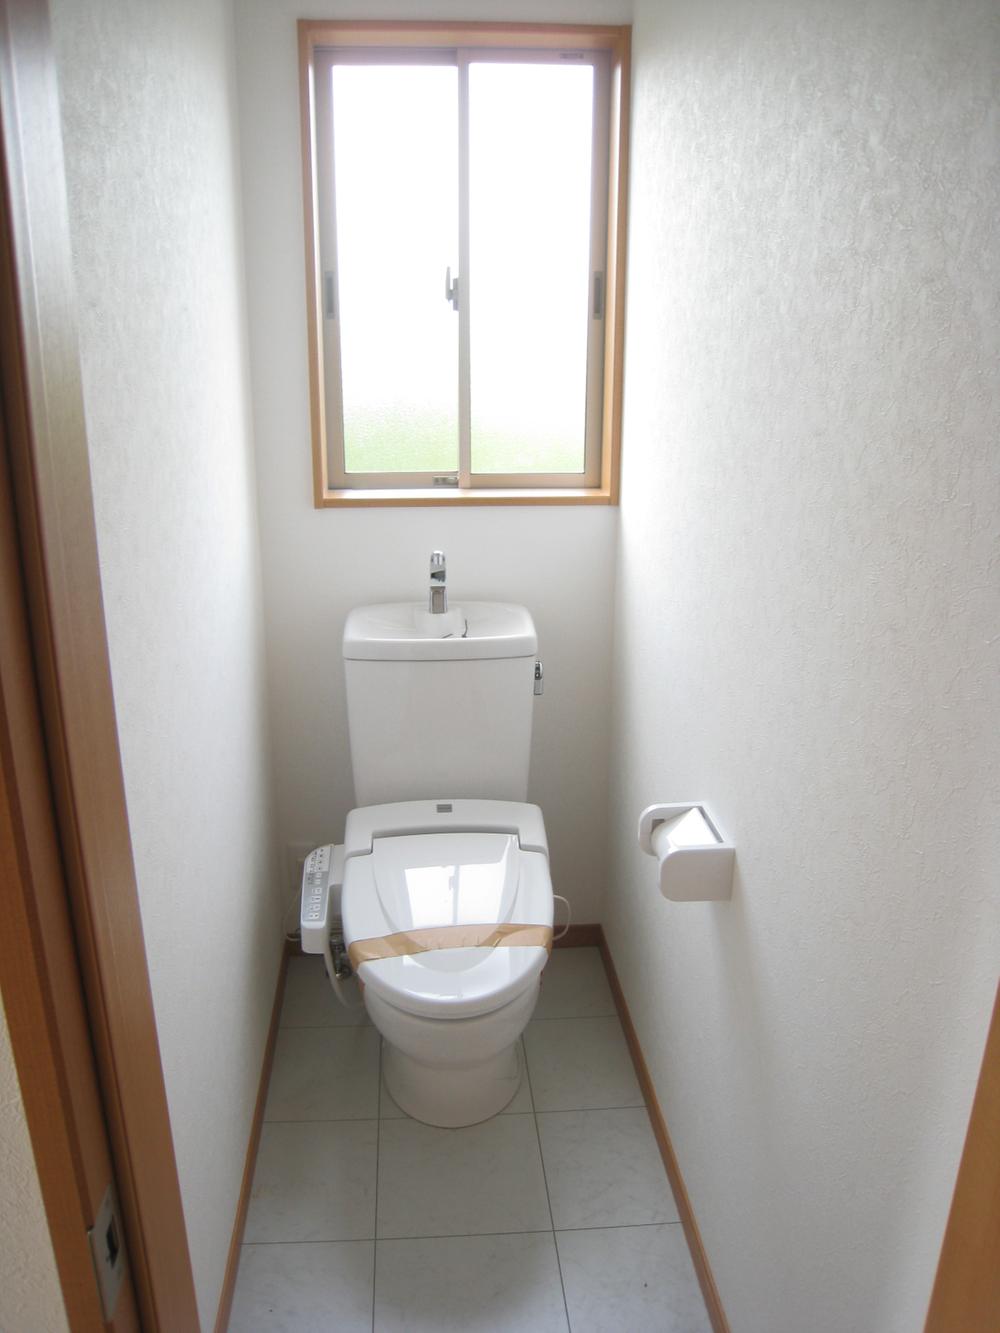 Toilet. Room (August 2012) shooting